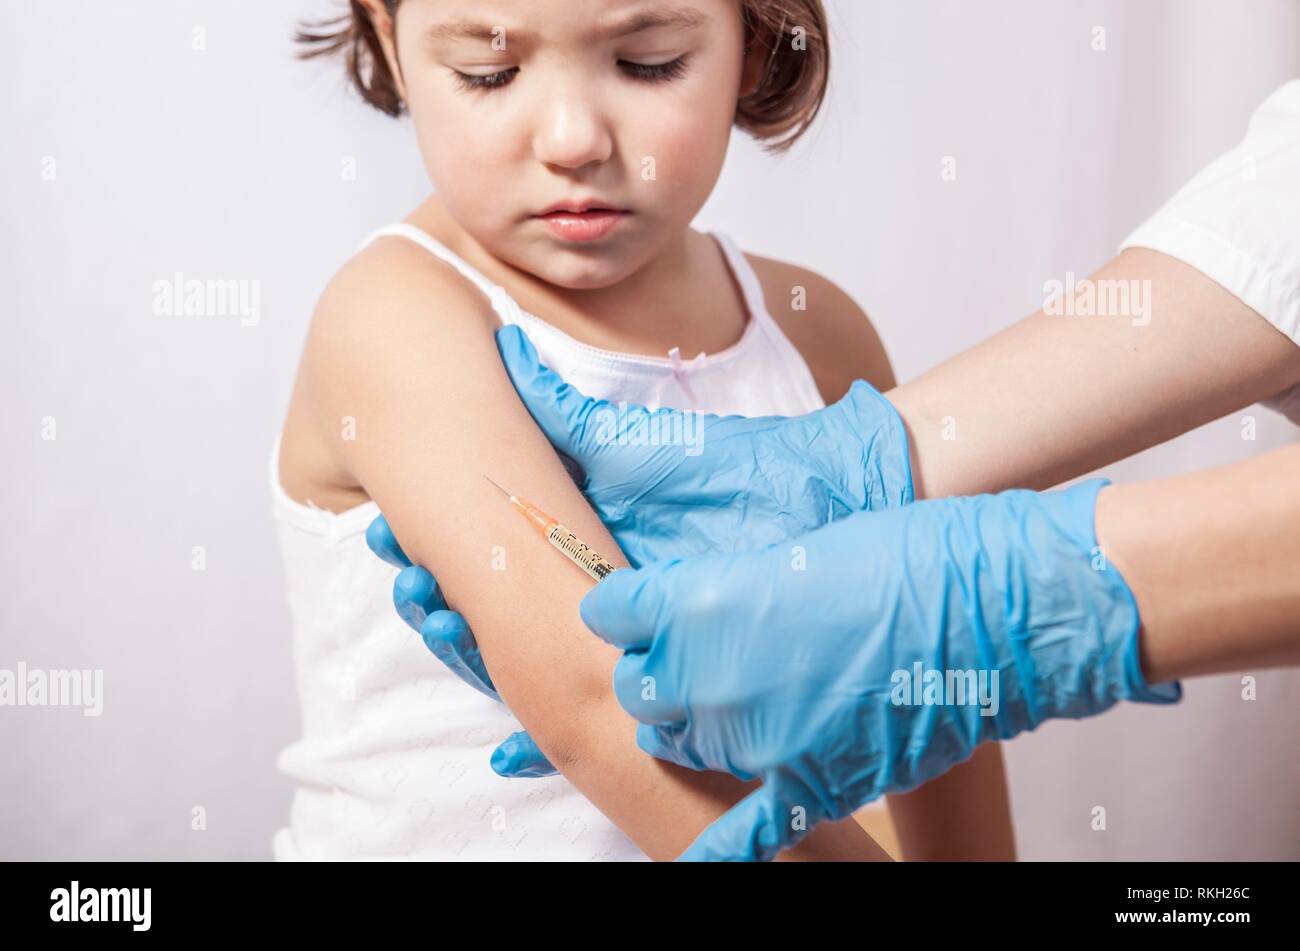 La vaccinazione di infermiere 3 anni bambina. Ella è preoccuparsi di doloroso stitch. Foto Stock